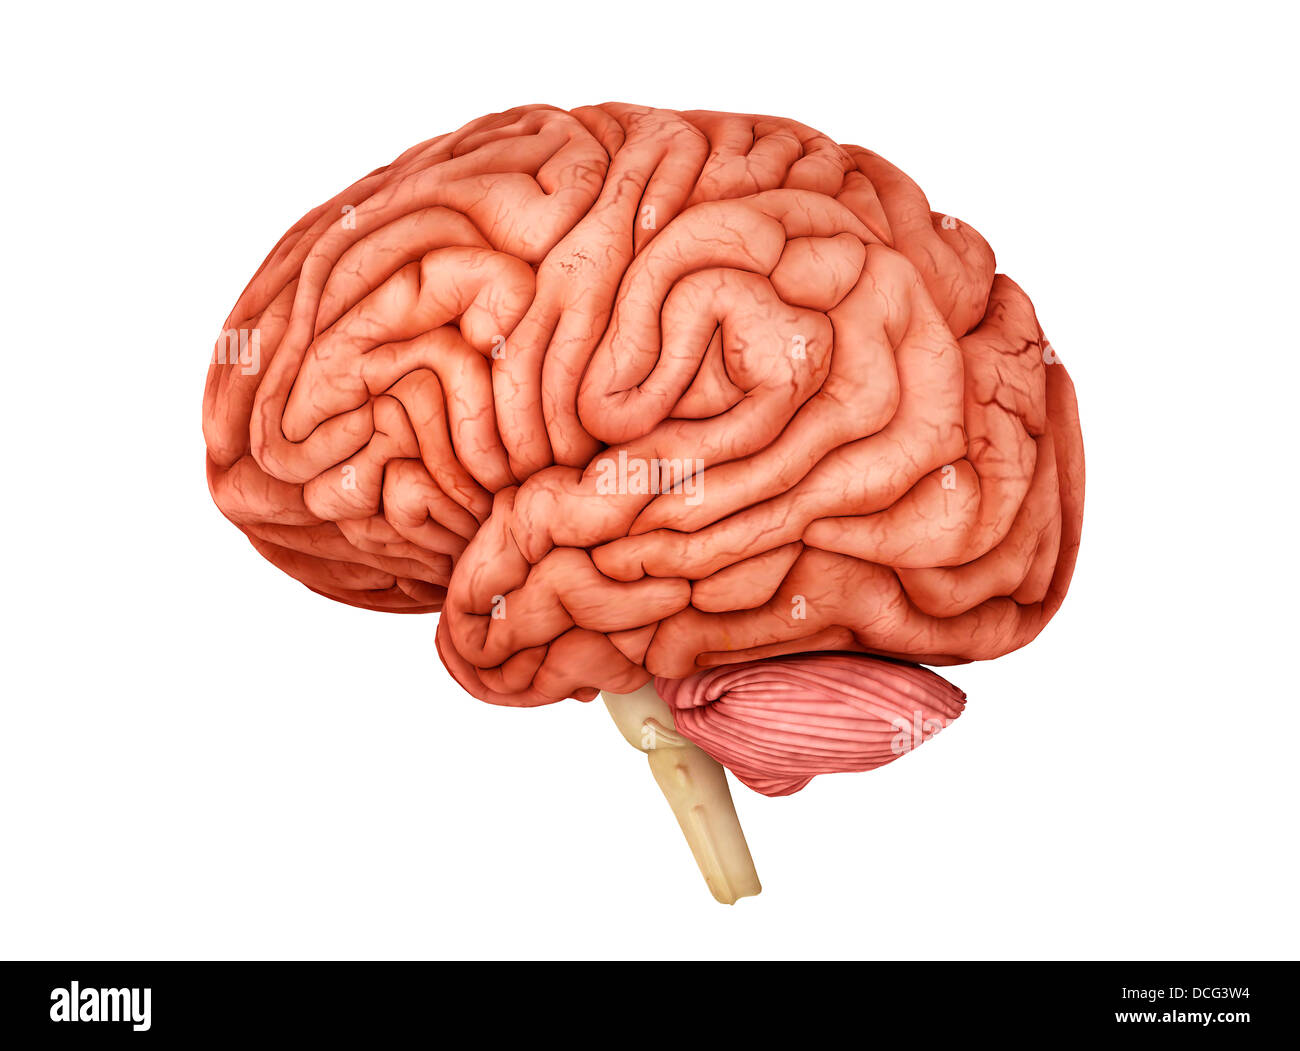 Anatomie des menschlichen Gehirns, Seitenansicht. Stockfoto